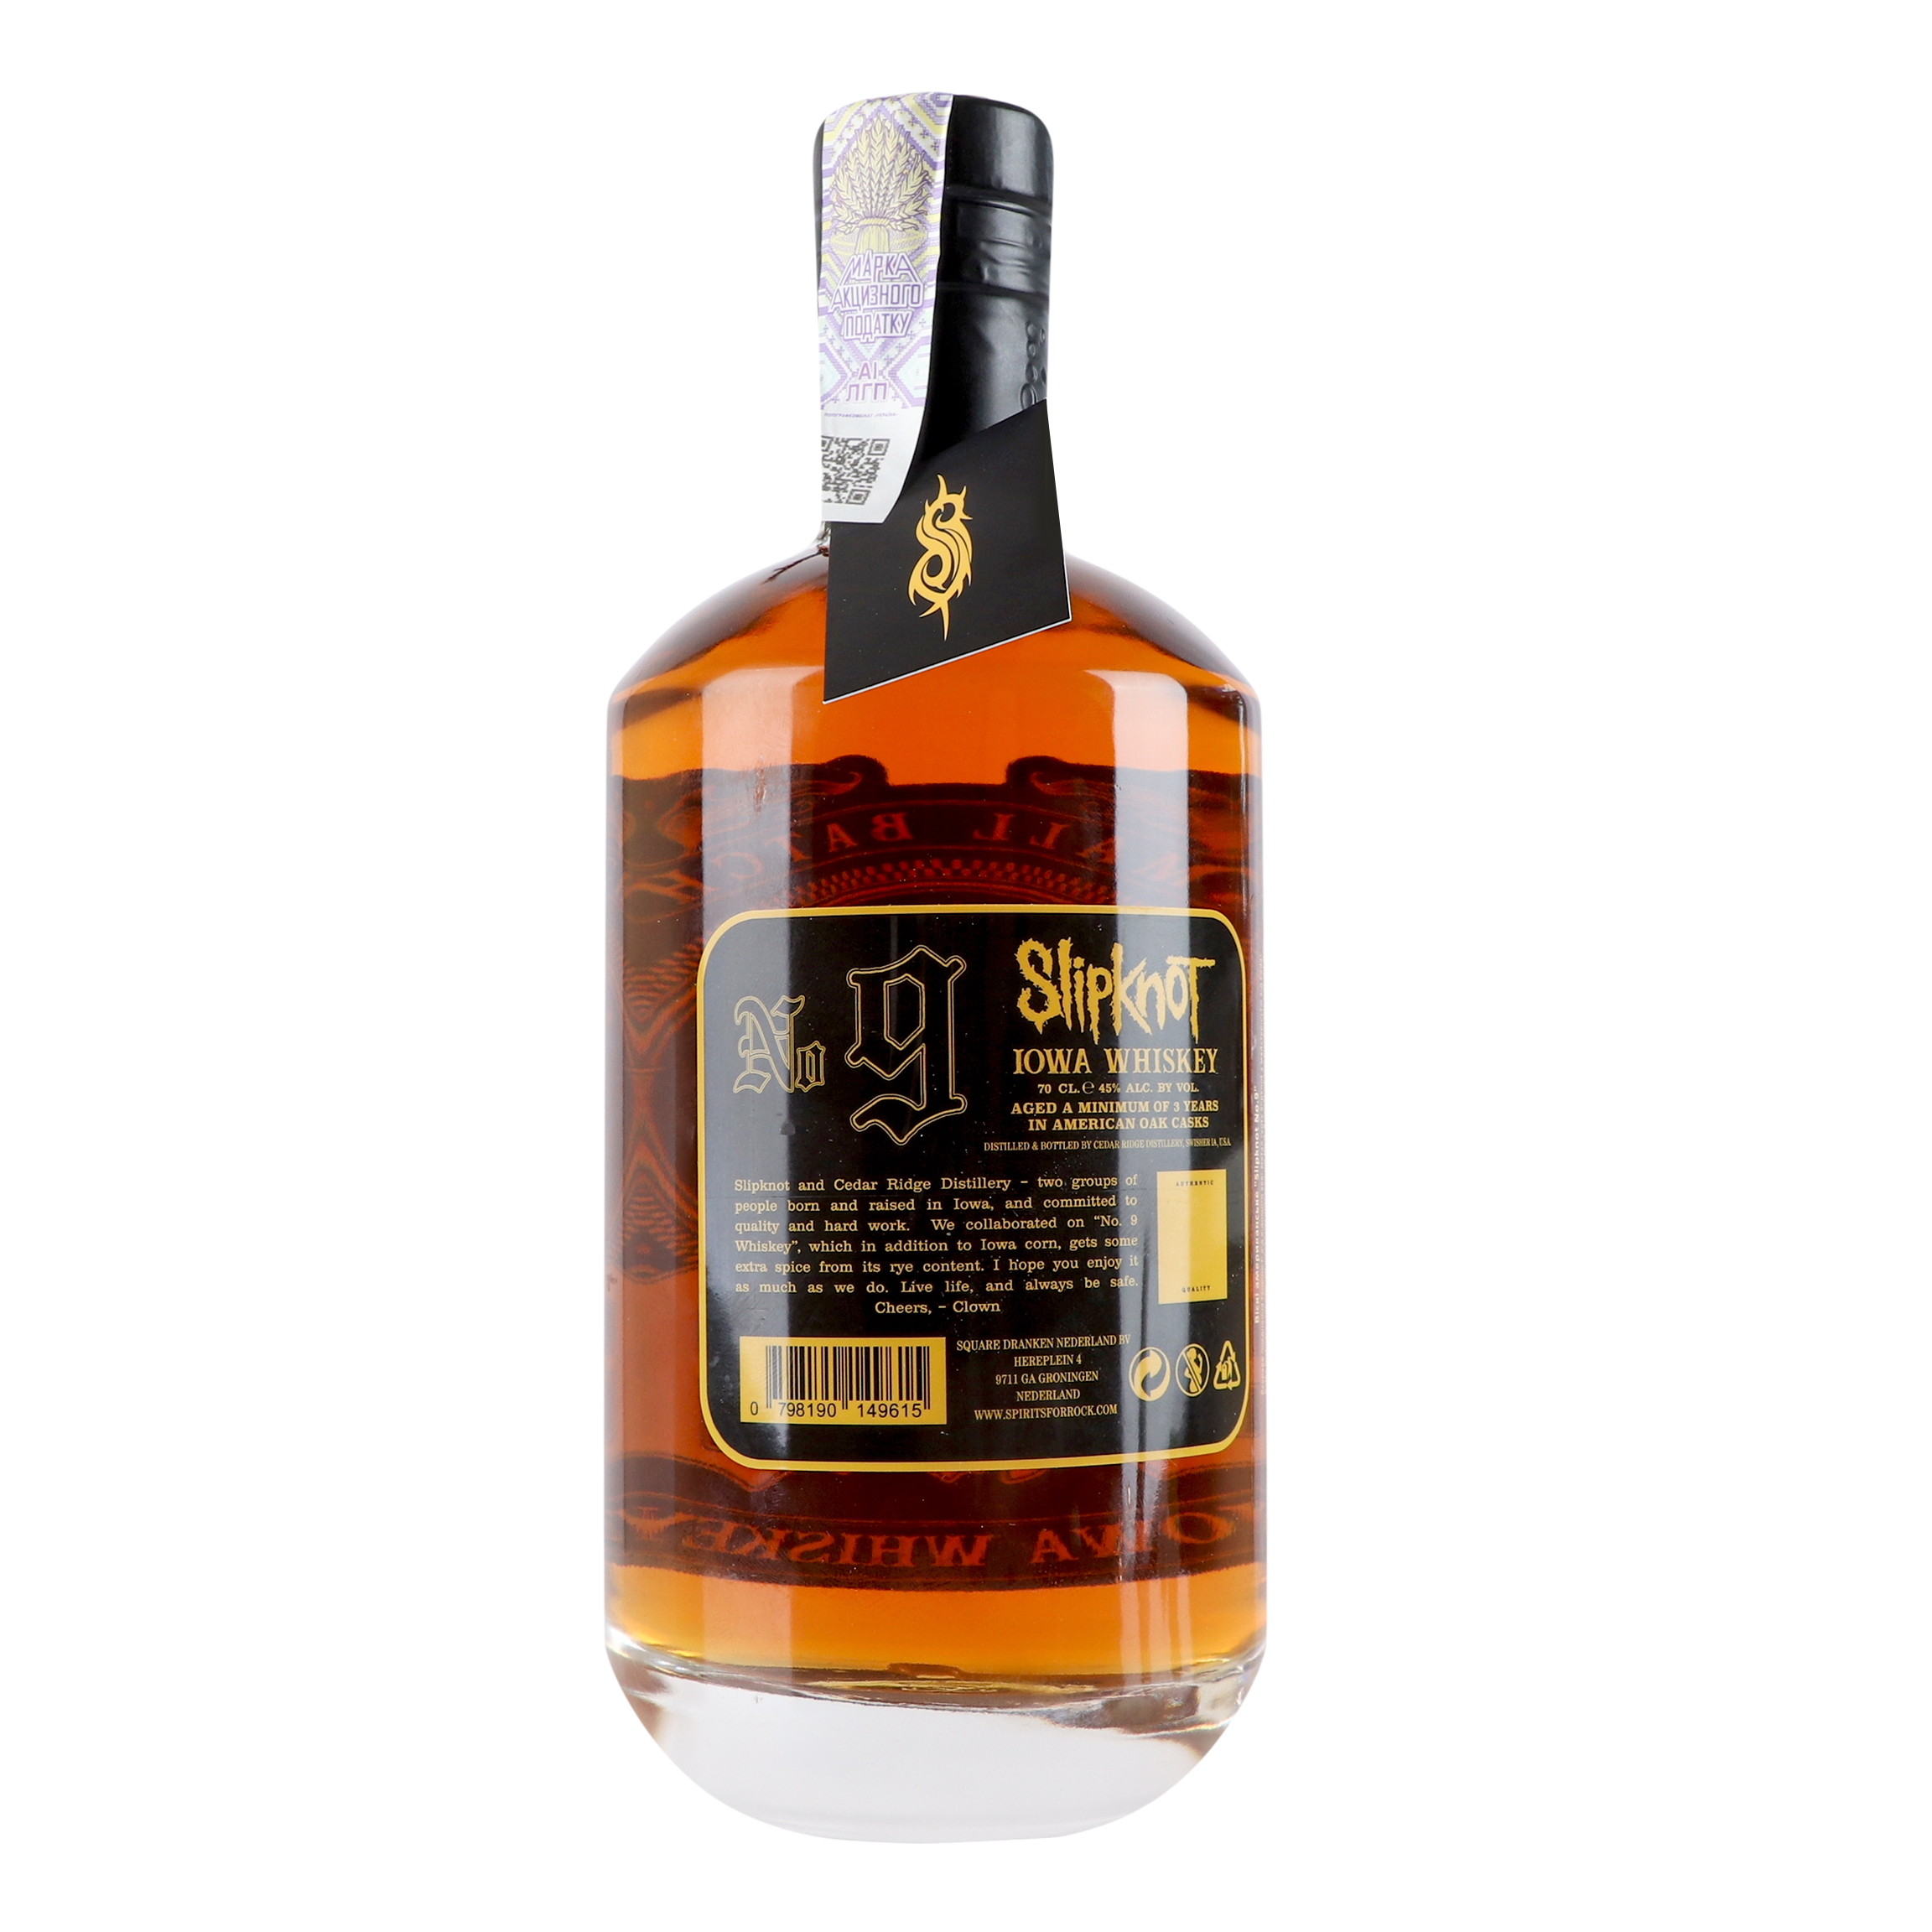 Віскі Slipknot №9 Iowa Whiskey 45% 0.7 л - фото 2